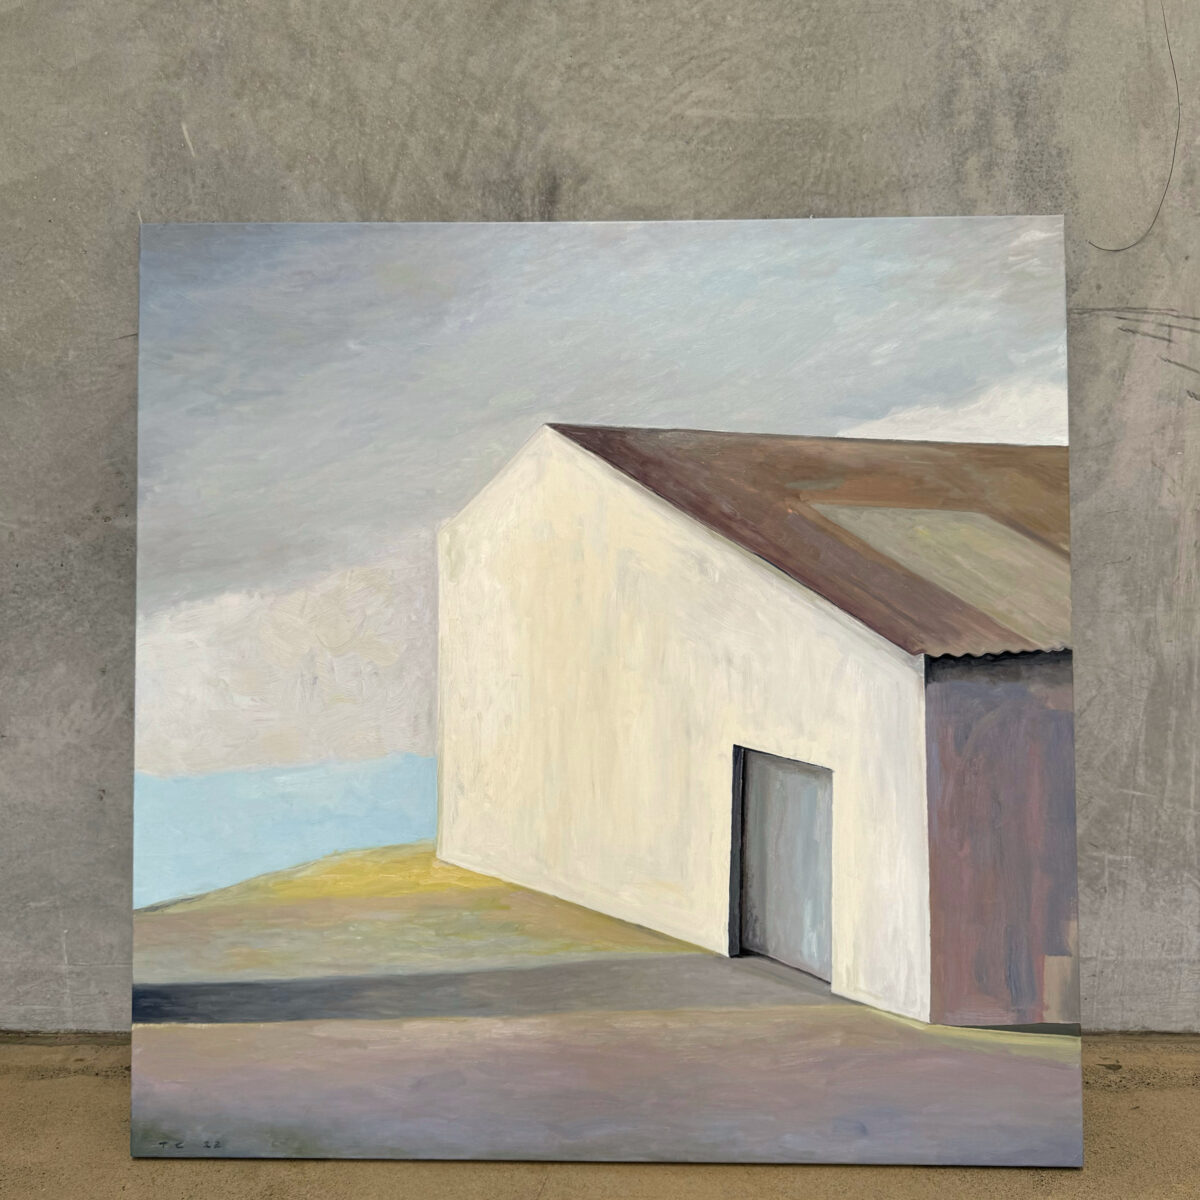 On the Ridge | Tony Coles | oil on canvas | 150 x 150 cm | $7,000